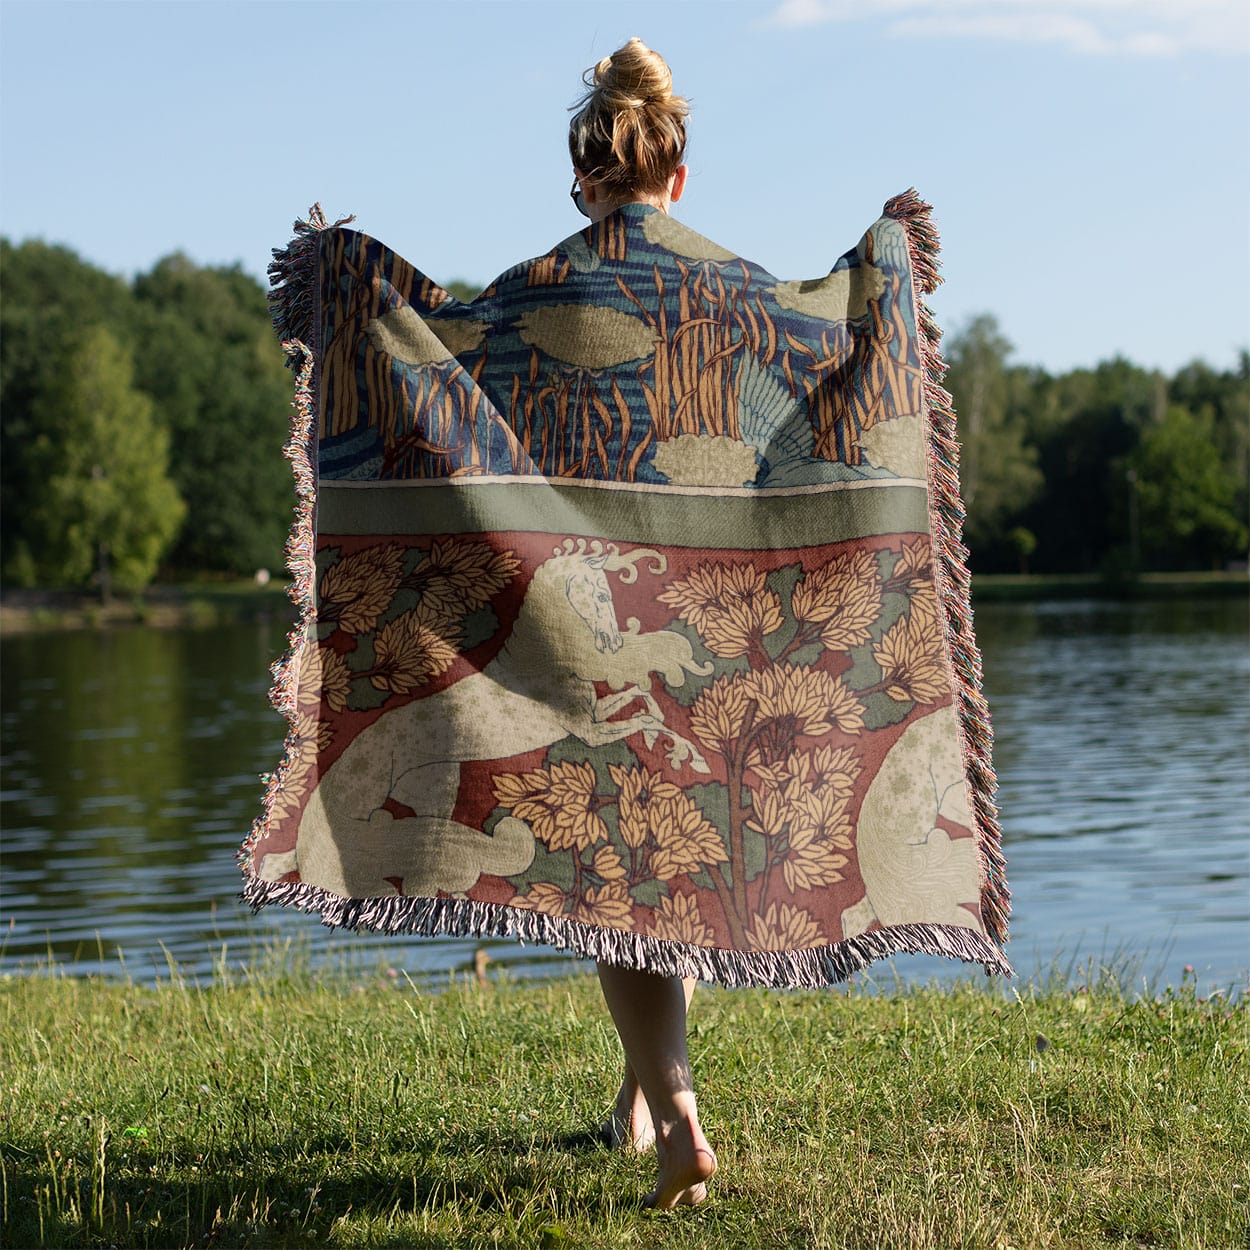 Art Nouveau Woven Blanket Held on a Woman's Back Outside